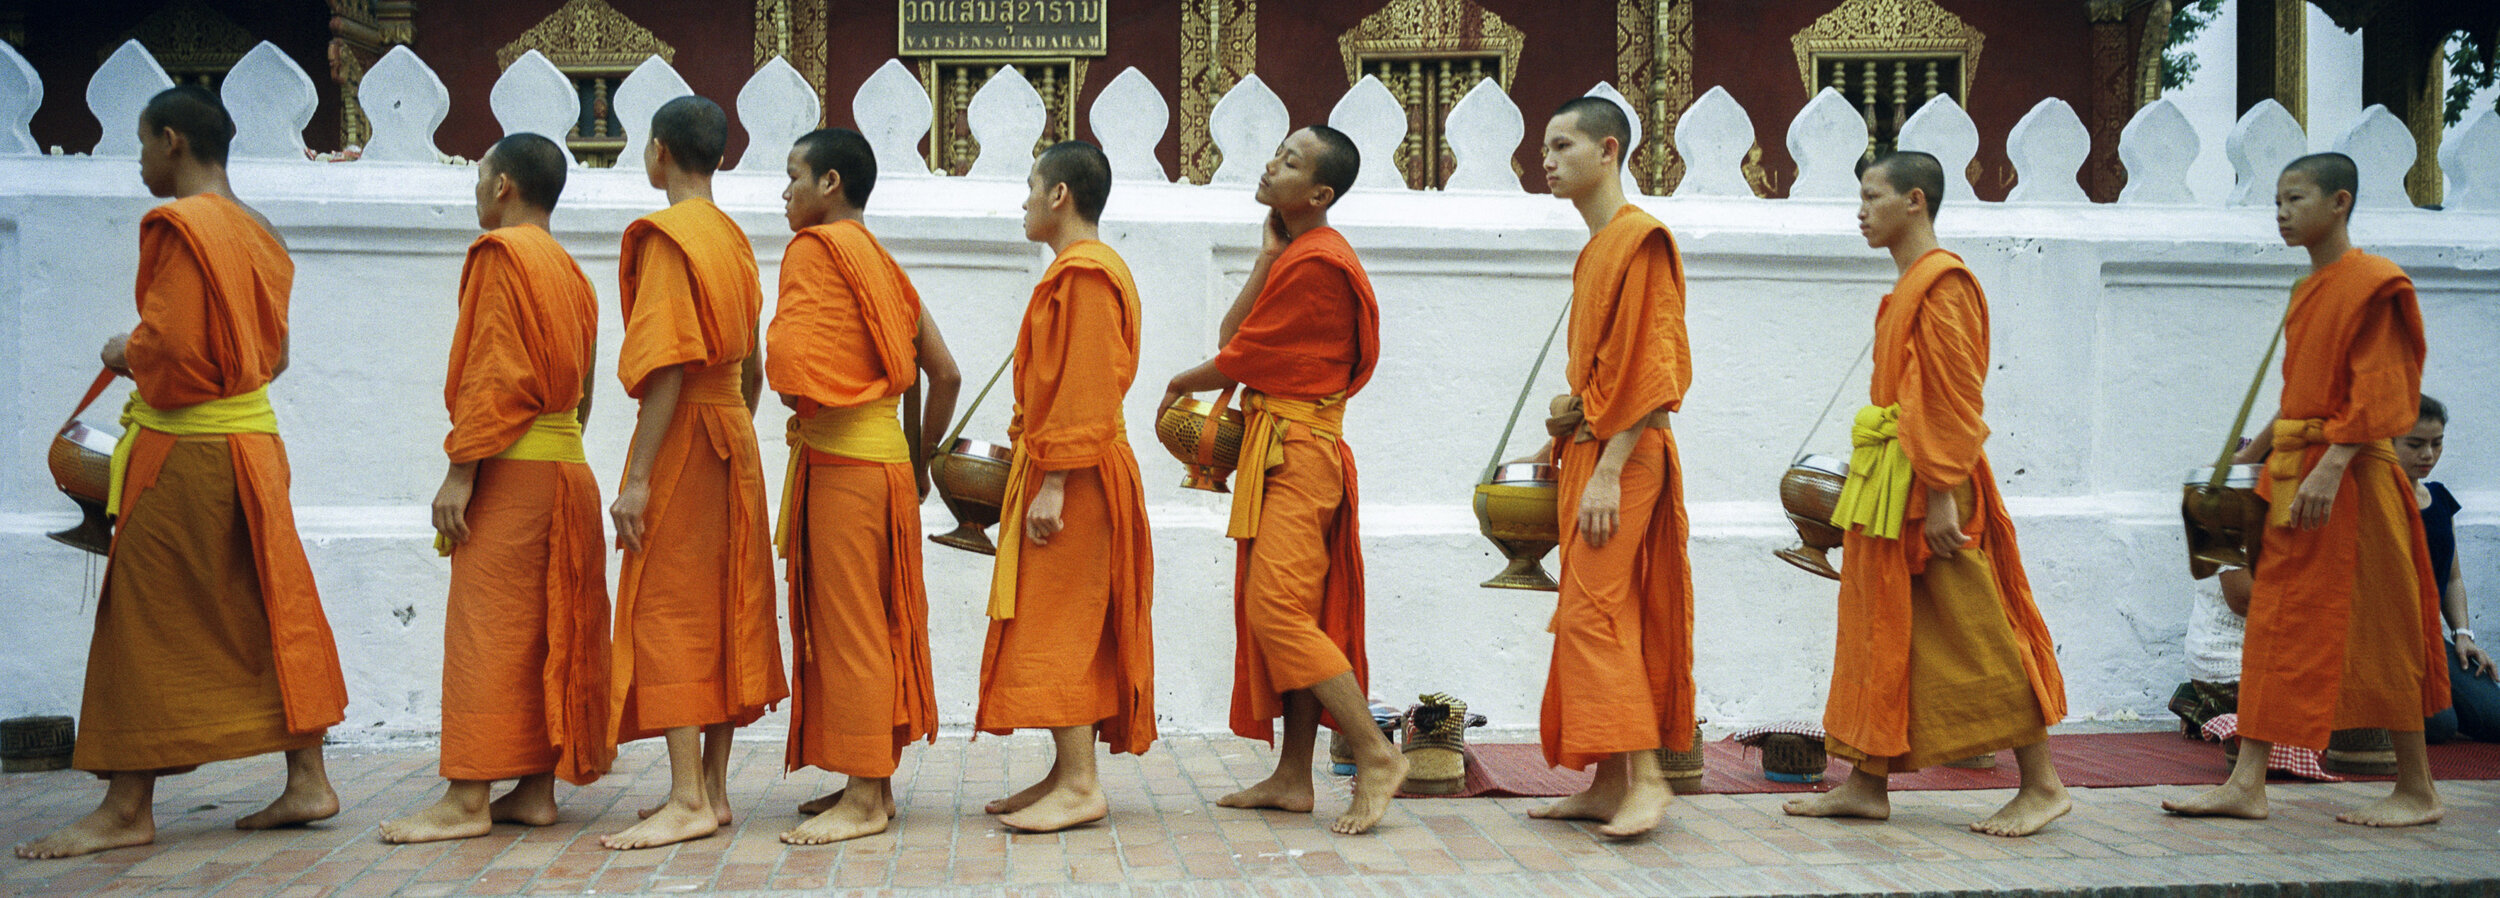 04072013_Tacon_Laos_monks_Panorama-2.jpg